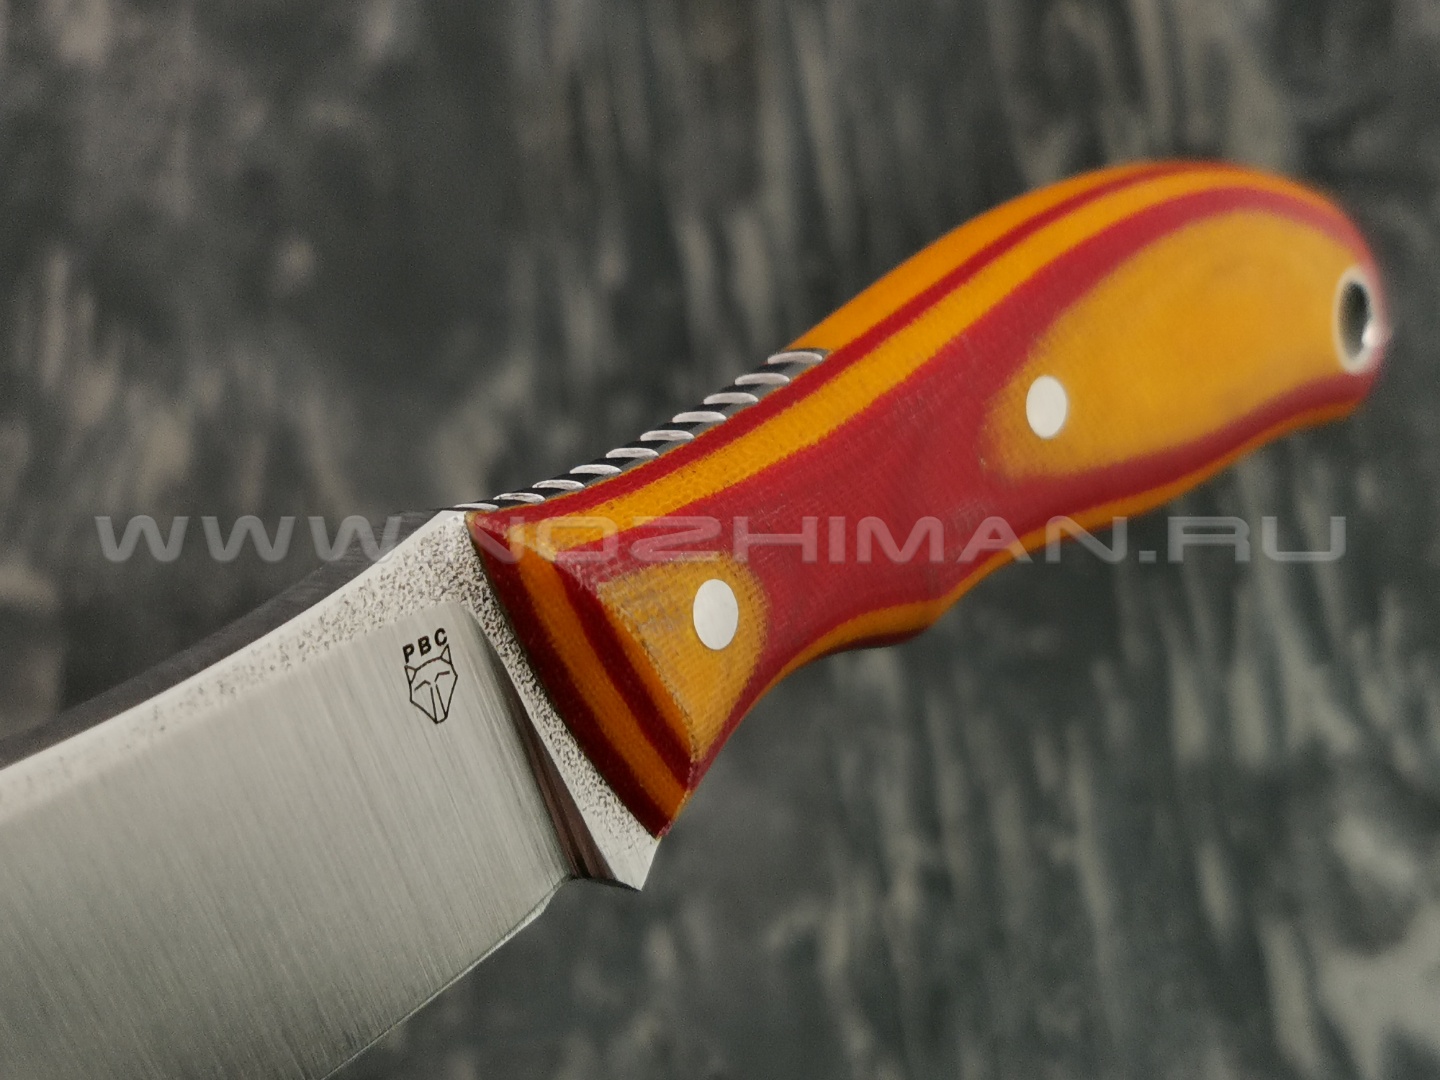 Материалы рукояток современных ножей